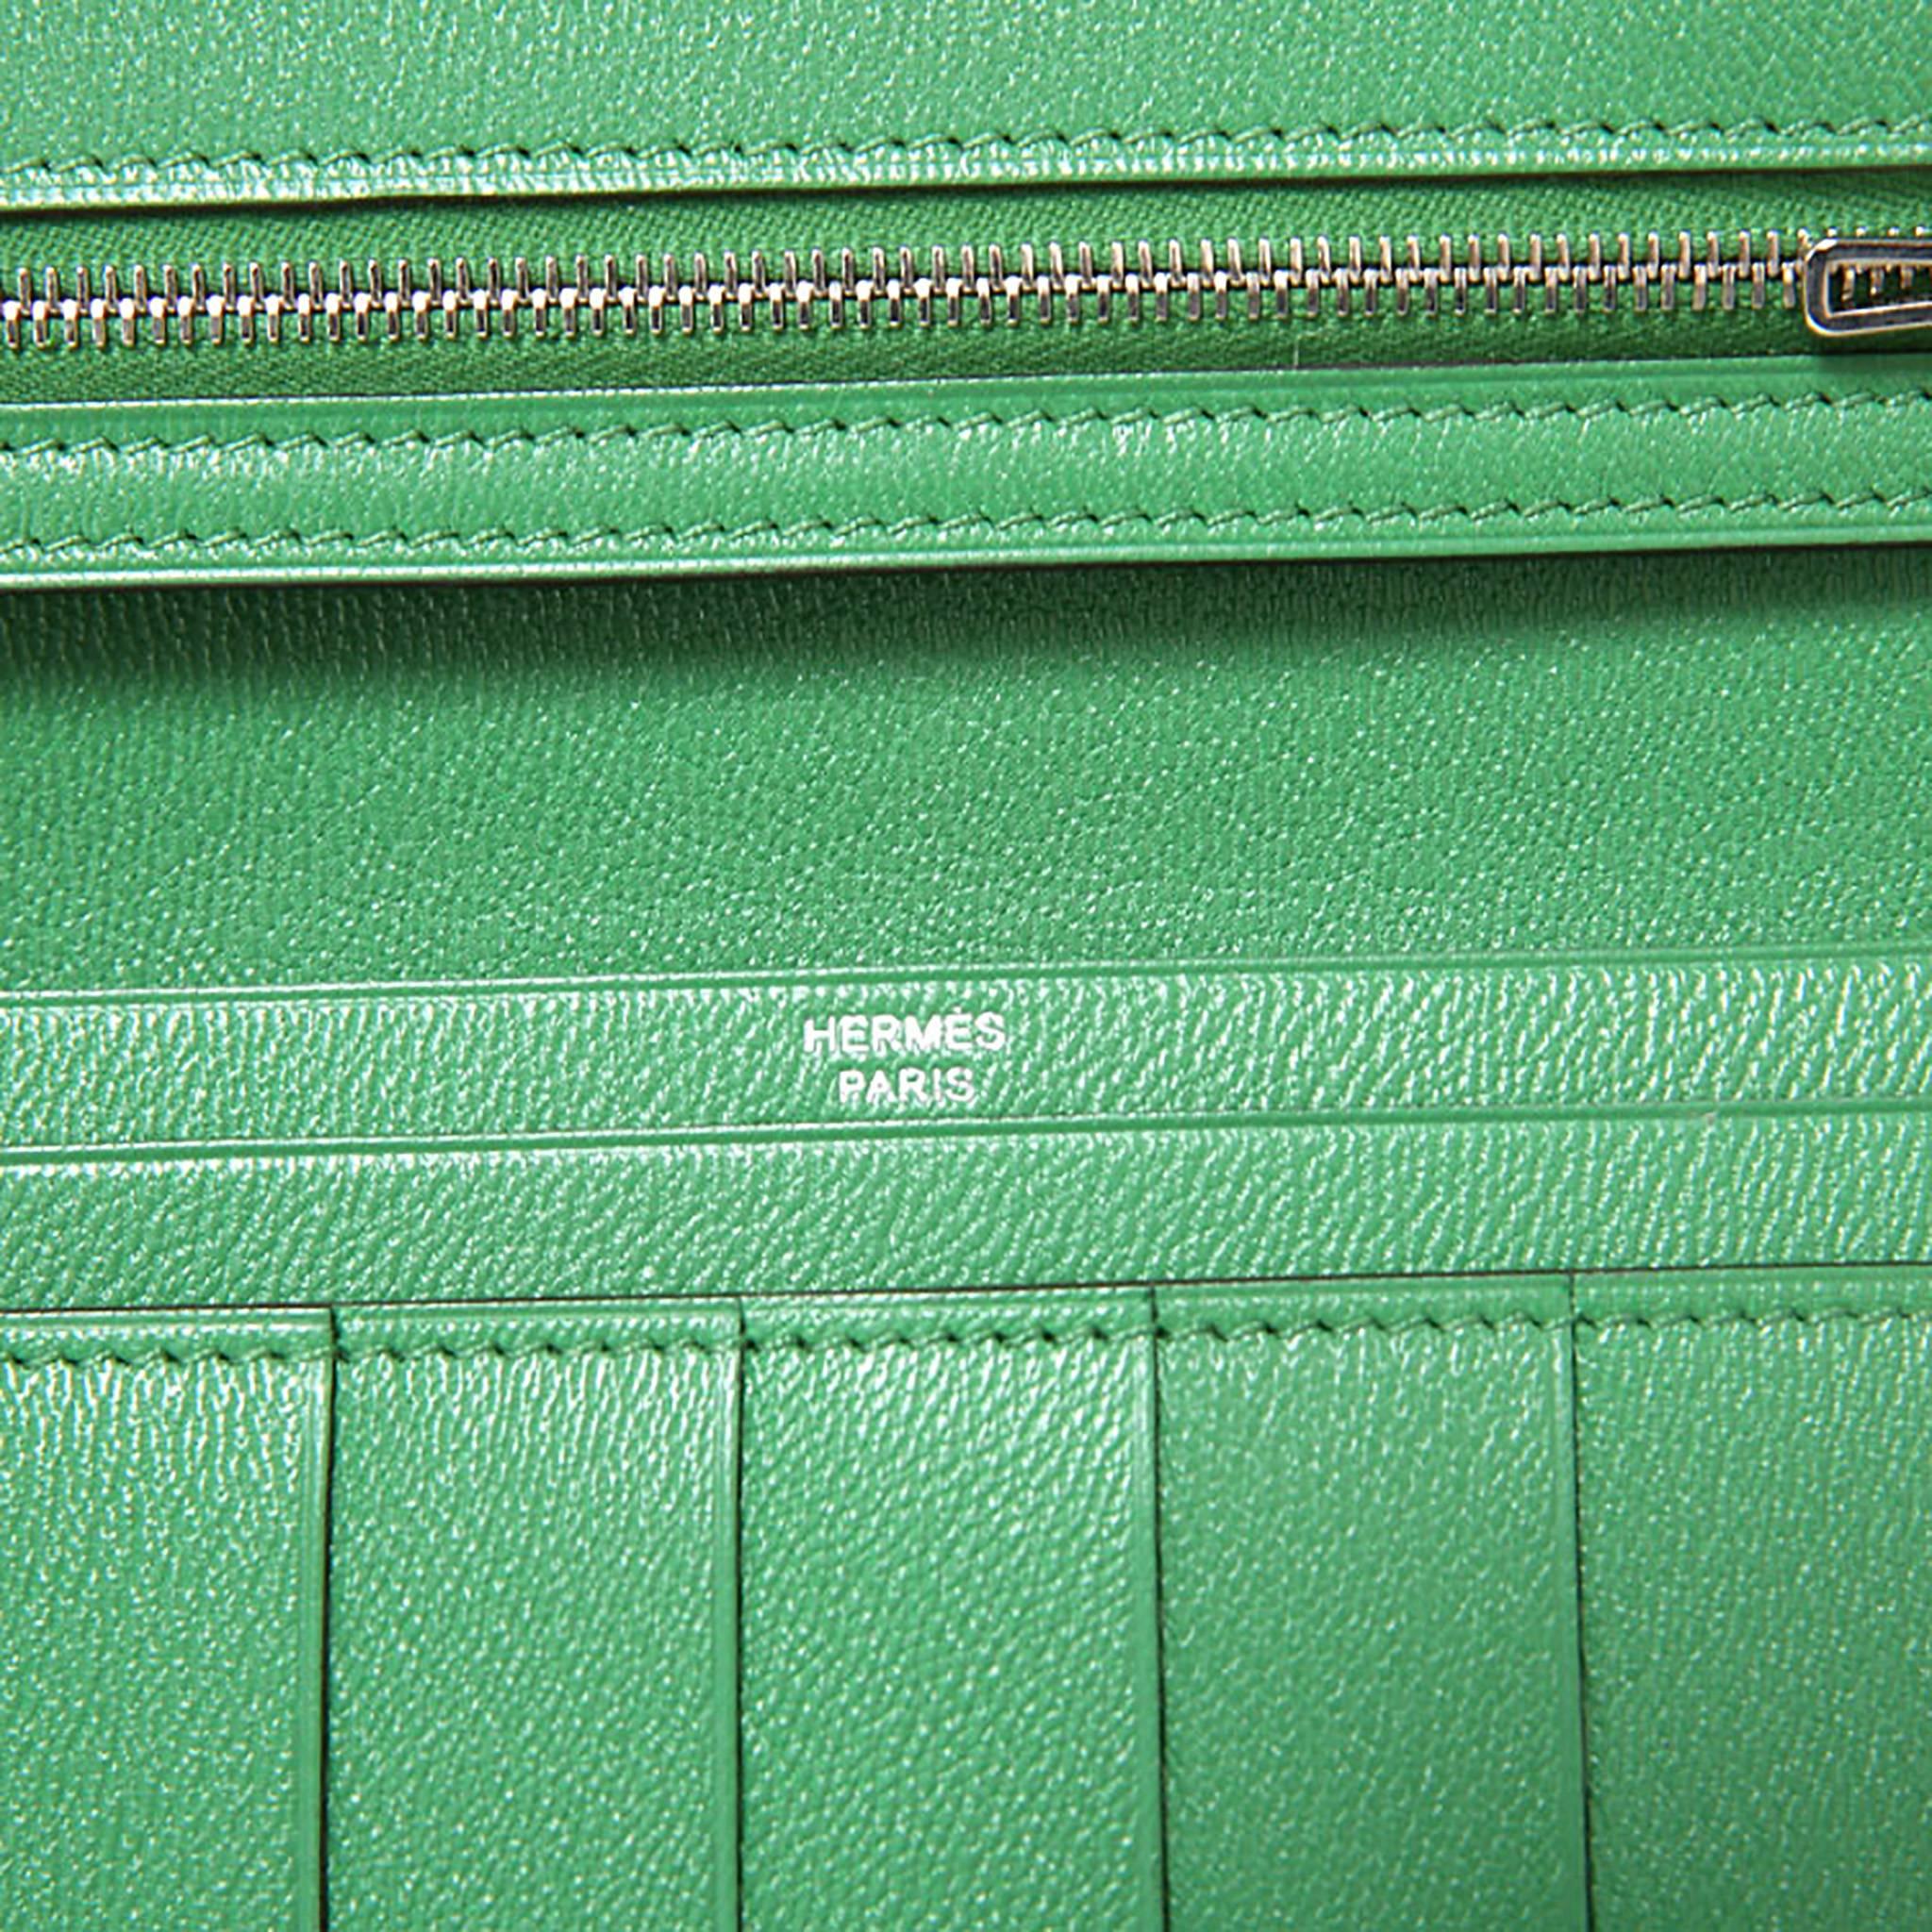 Hermes Bearn Wallet Crocodile Fight Lizard Skin Green / Ombre Color PHW ...